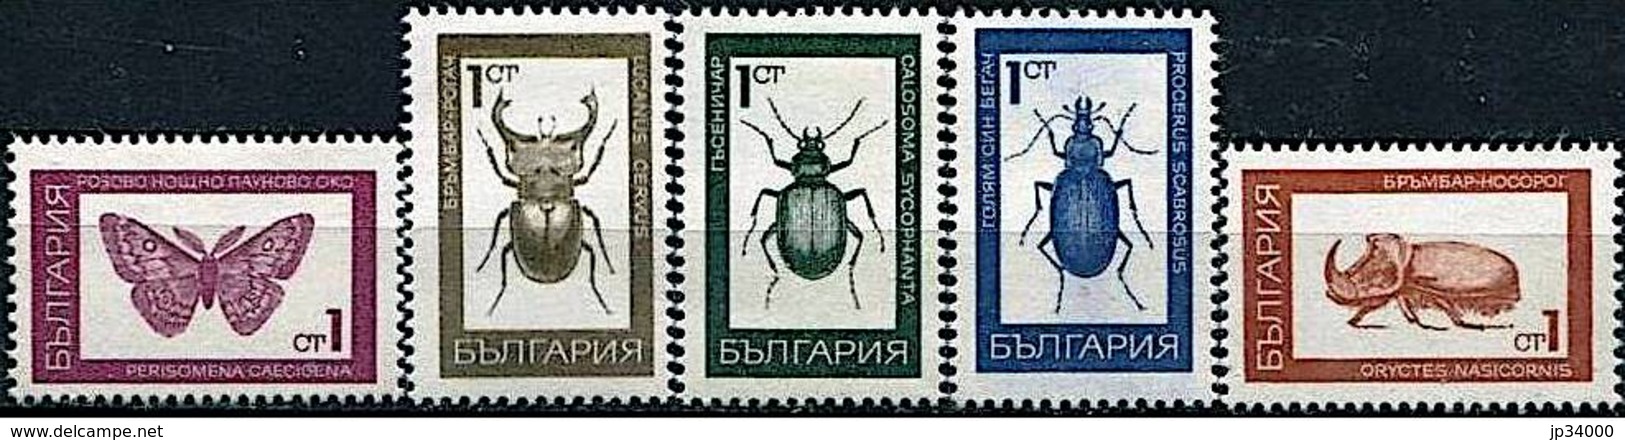 BULGARIE Insectes, Insecte, Insect, Insects, Insectos, Insekten. Yvert N° 1610/14 Neuf Sans Gomme - Papillons